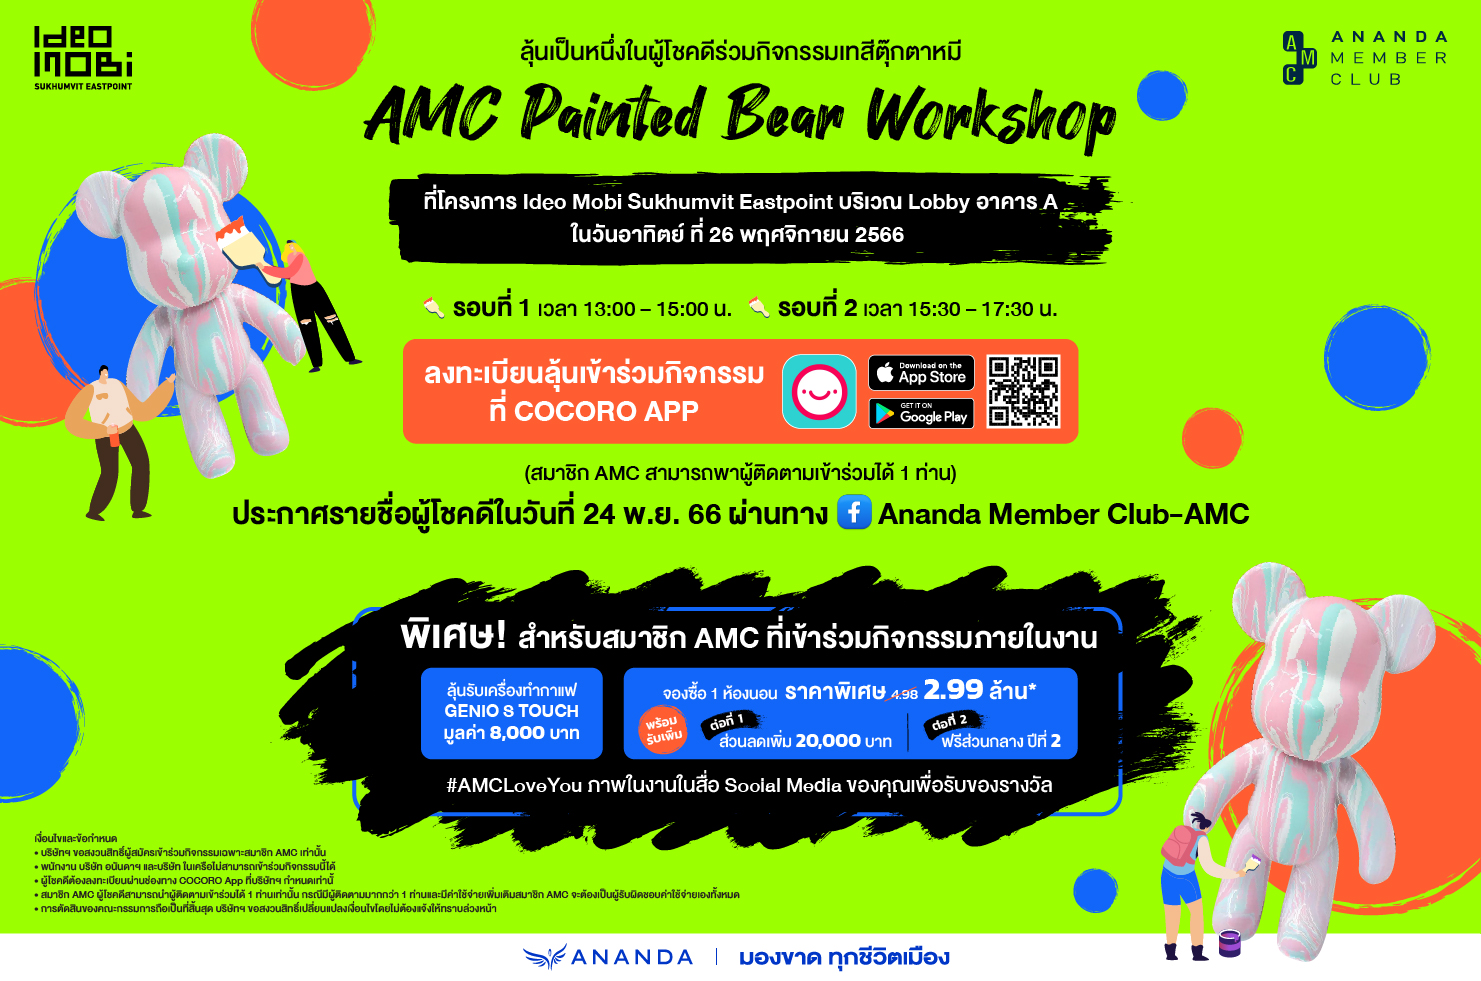 ชวนสมาชิก AMC ร่วมลุ้นเข้าร่วมกิจกรรมเทสีตุ๊กตาหมี ที่โครงการ Ideo Mobi Sukhumvit Eastpoint